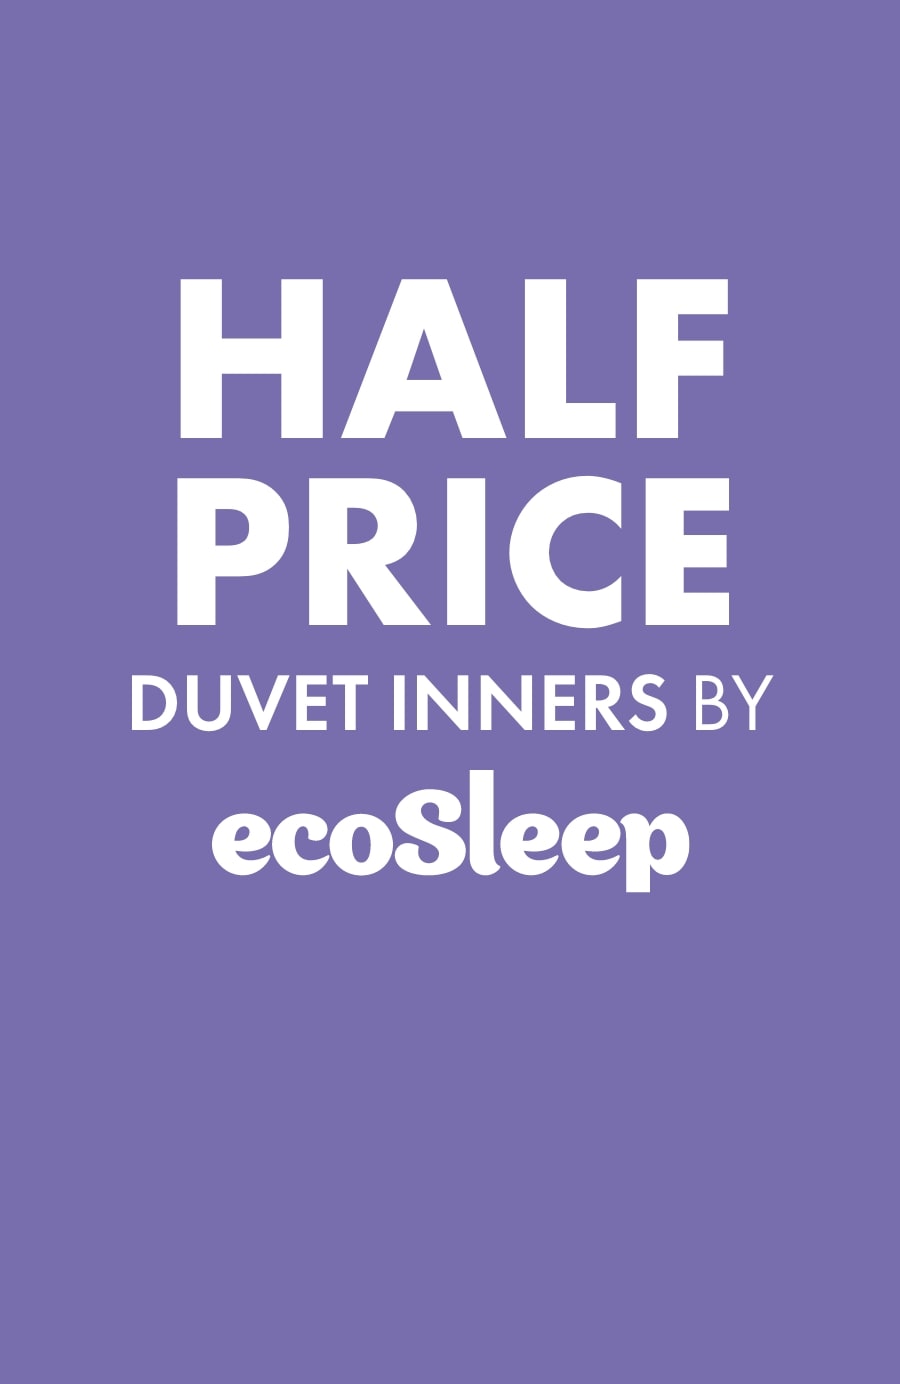 Half Price Duvet Inners by ecosleep